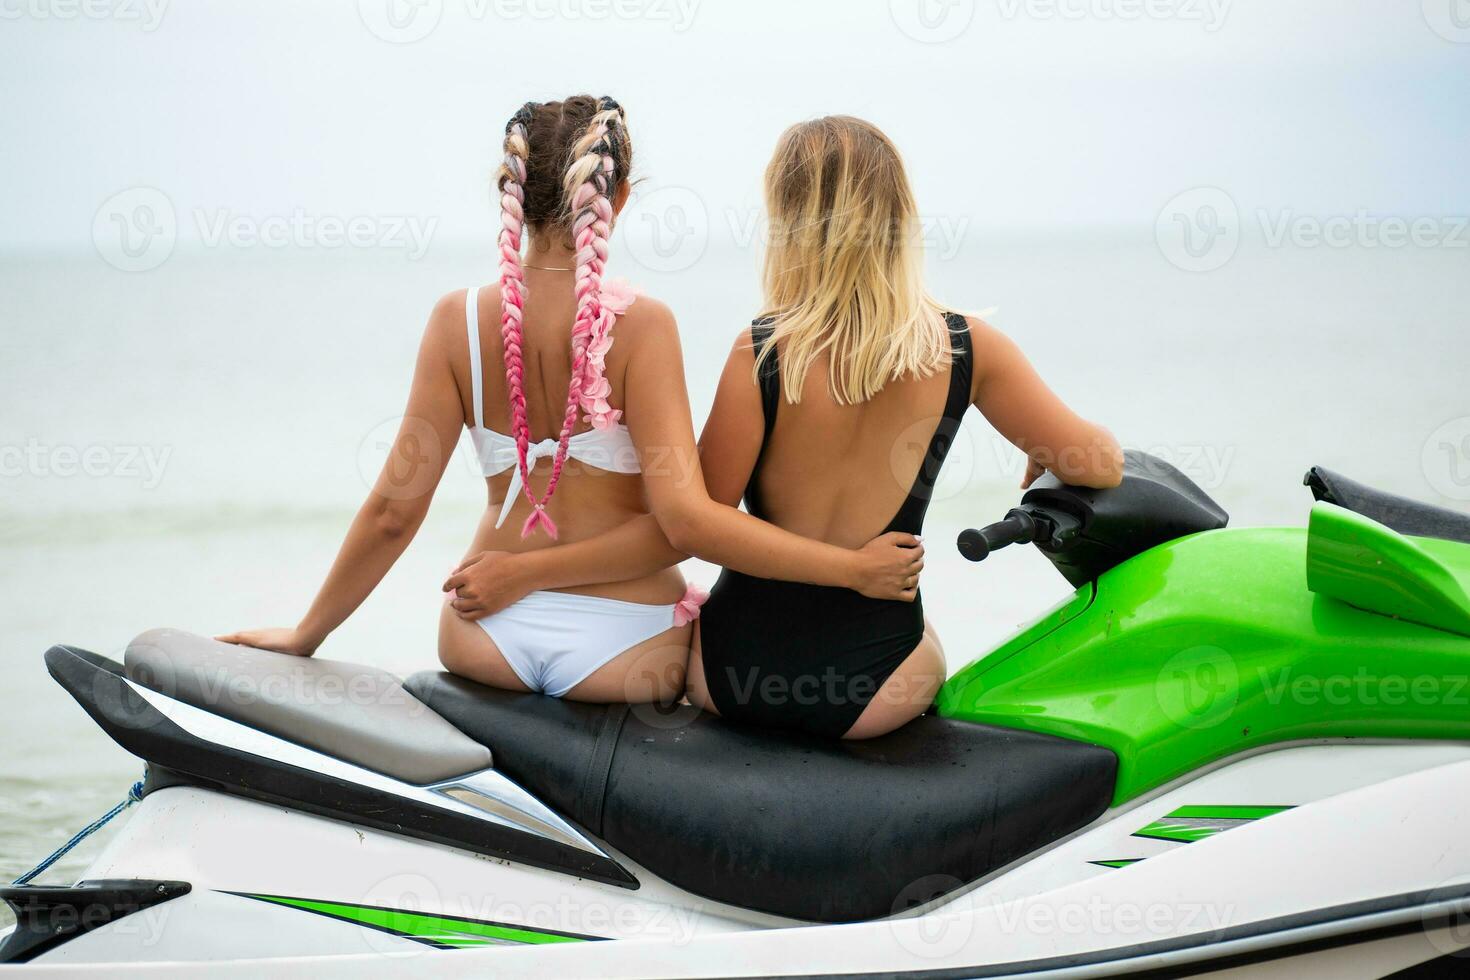 dos sexy mujer en bikini en agua scooter en mar verano estilo foto